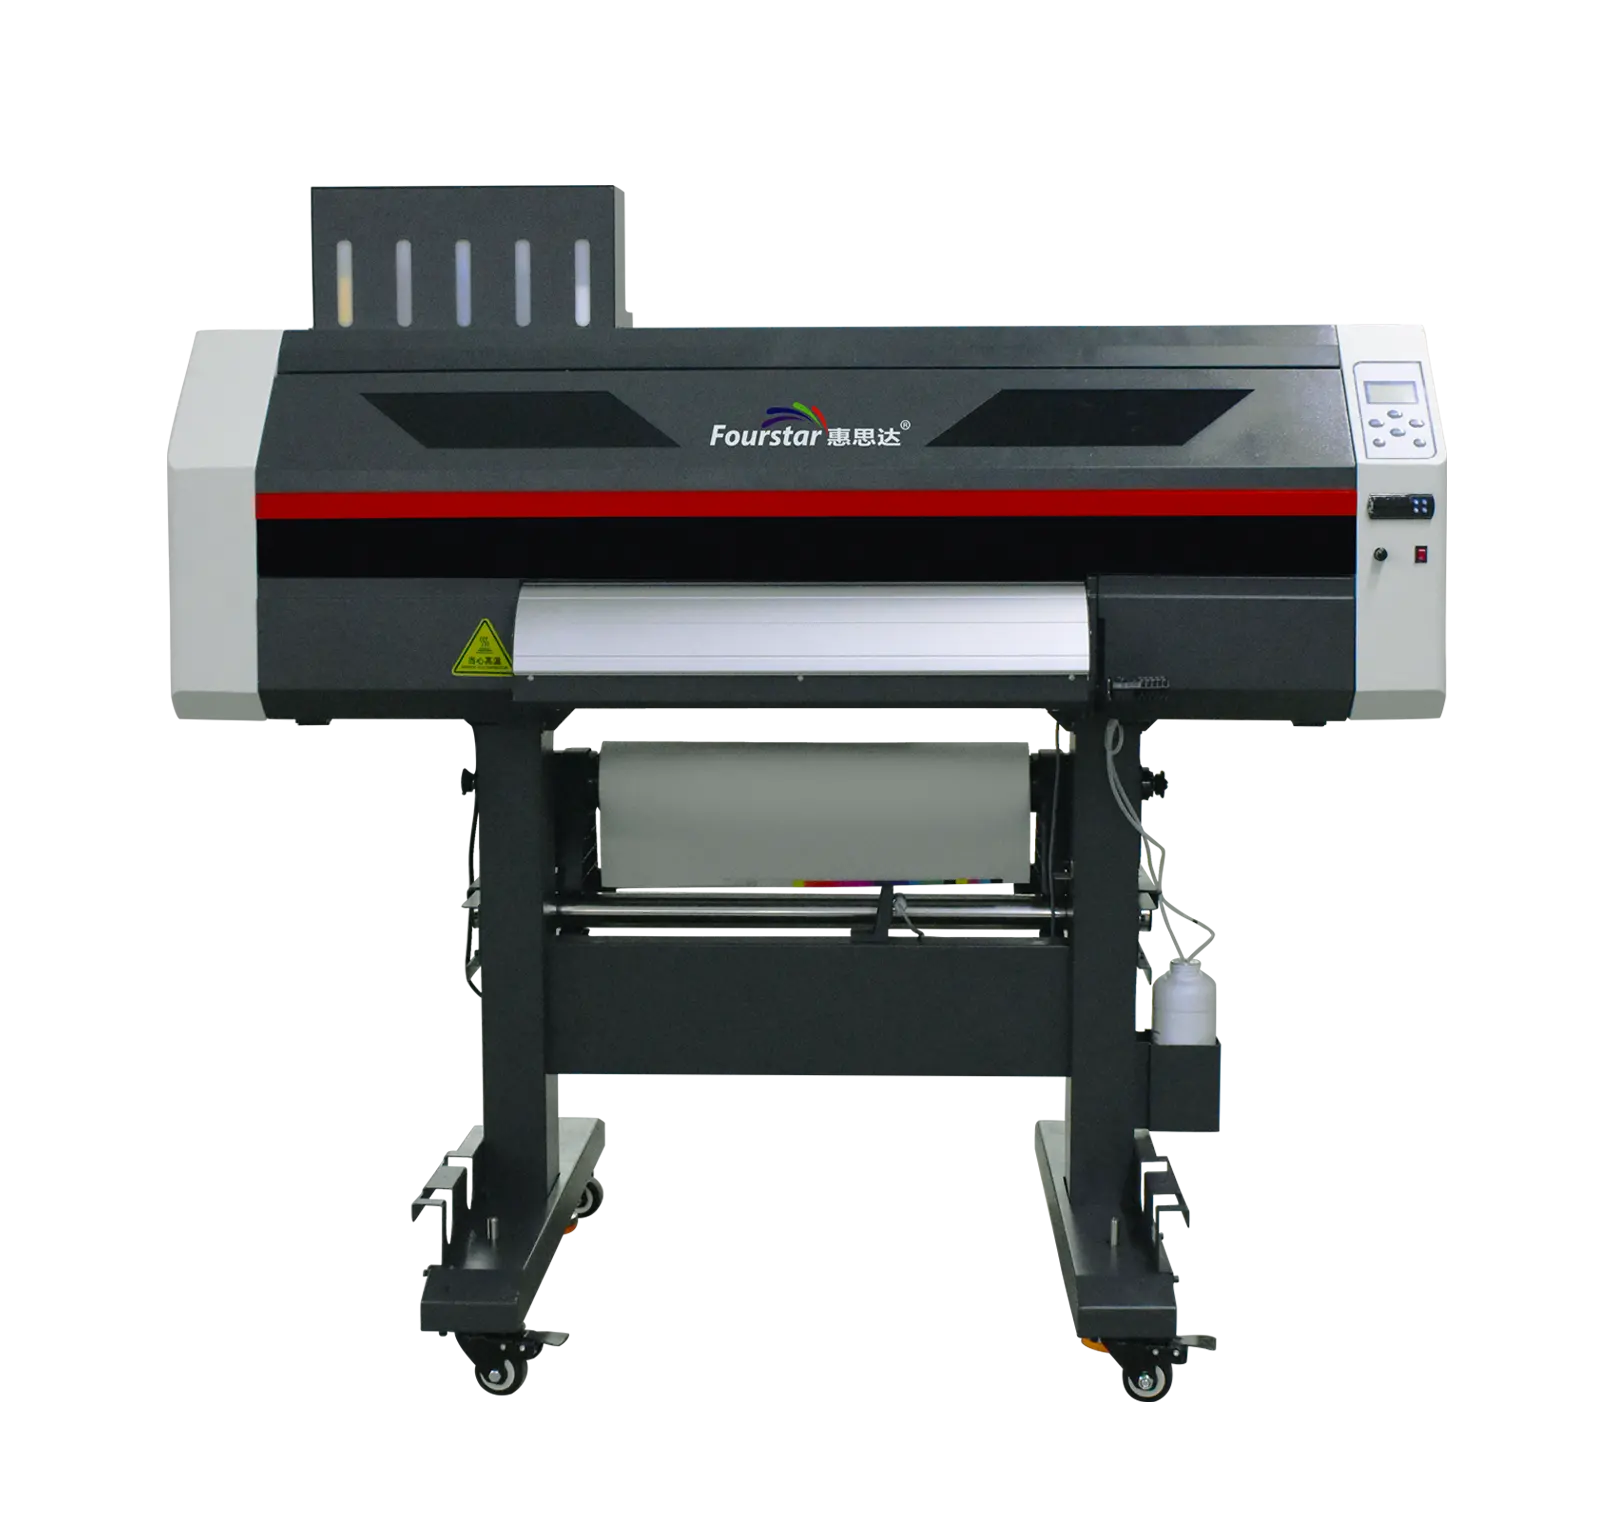 Fourstar-impresora dtf de 60cm de ancho, máquina de vibración de polvo h650, hoson board, epson i3200, boquillas duales